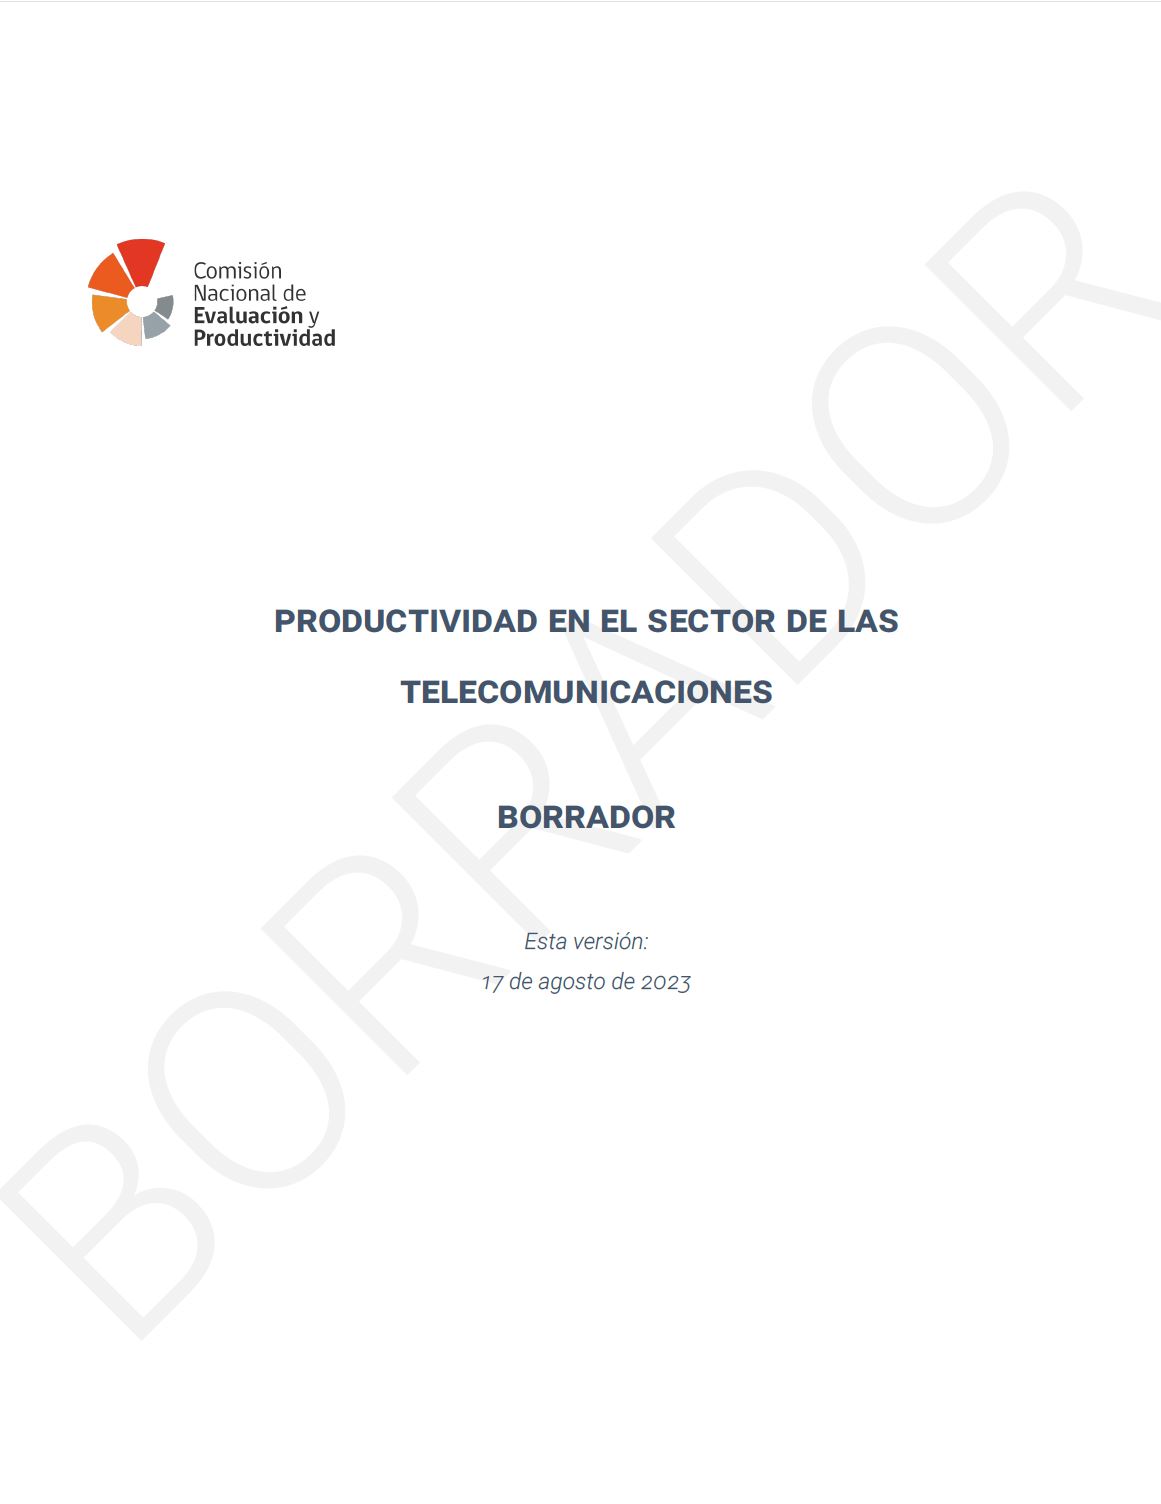 Acceso directo a los nmeros publicados en la revista Productividad en el Sector de las Telecomunicaciones